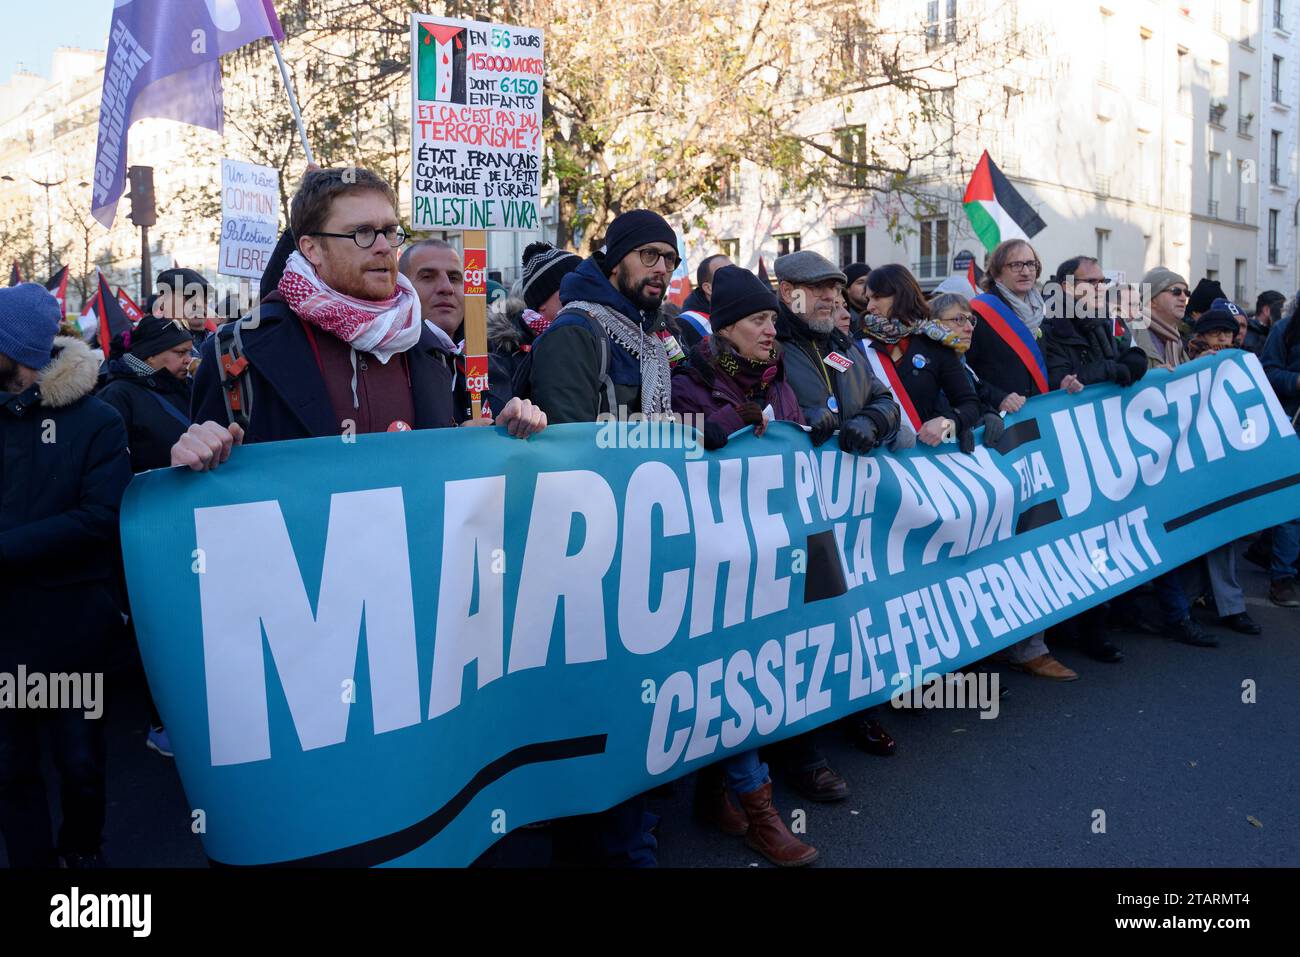 Jean Luc Mélenchon marche pour la paix ,la Justice et un cessez le feu permanent en Palestine, entre la Place de la république et celle de la bastille Foto Stock